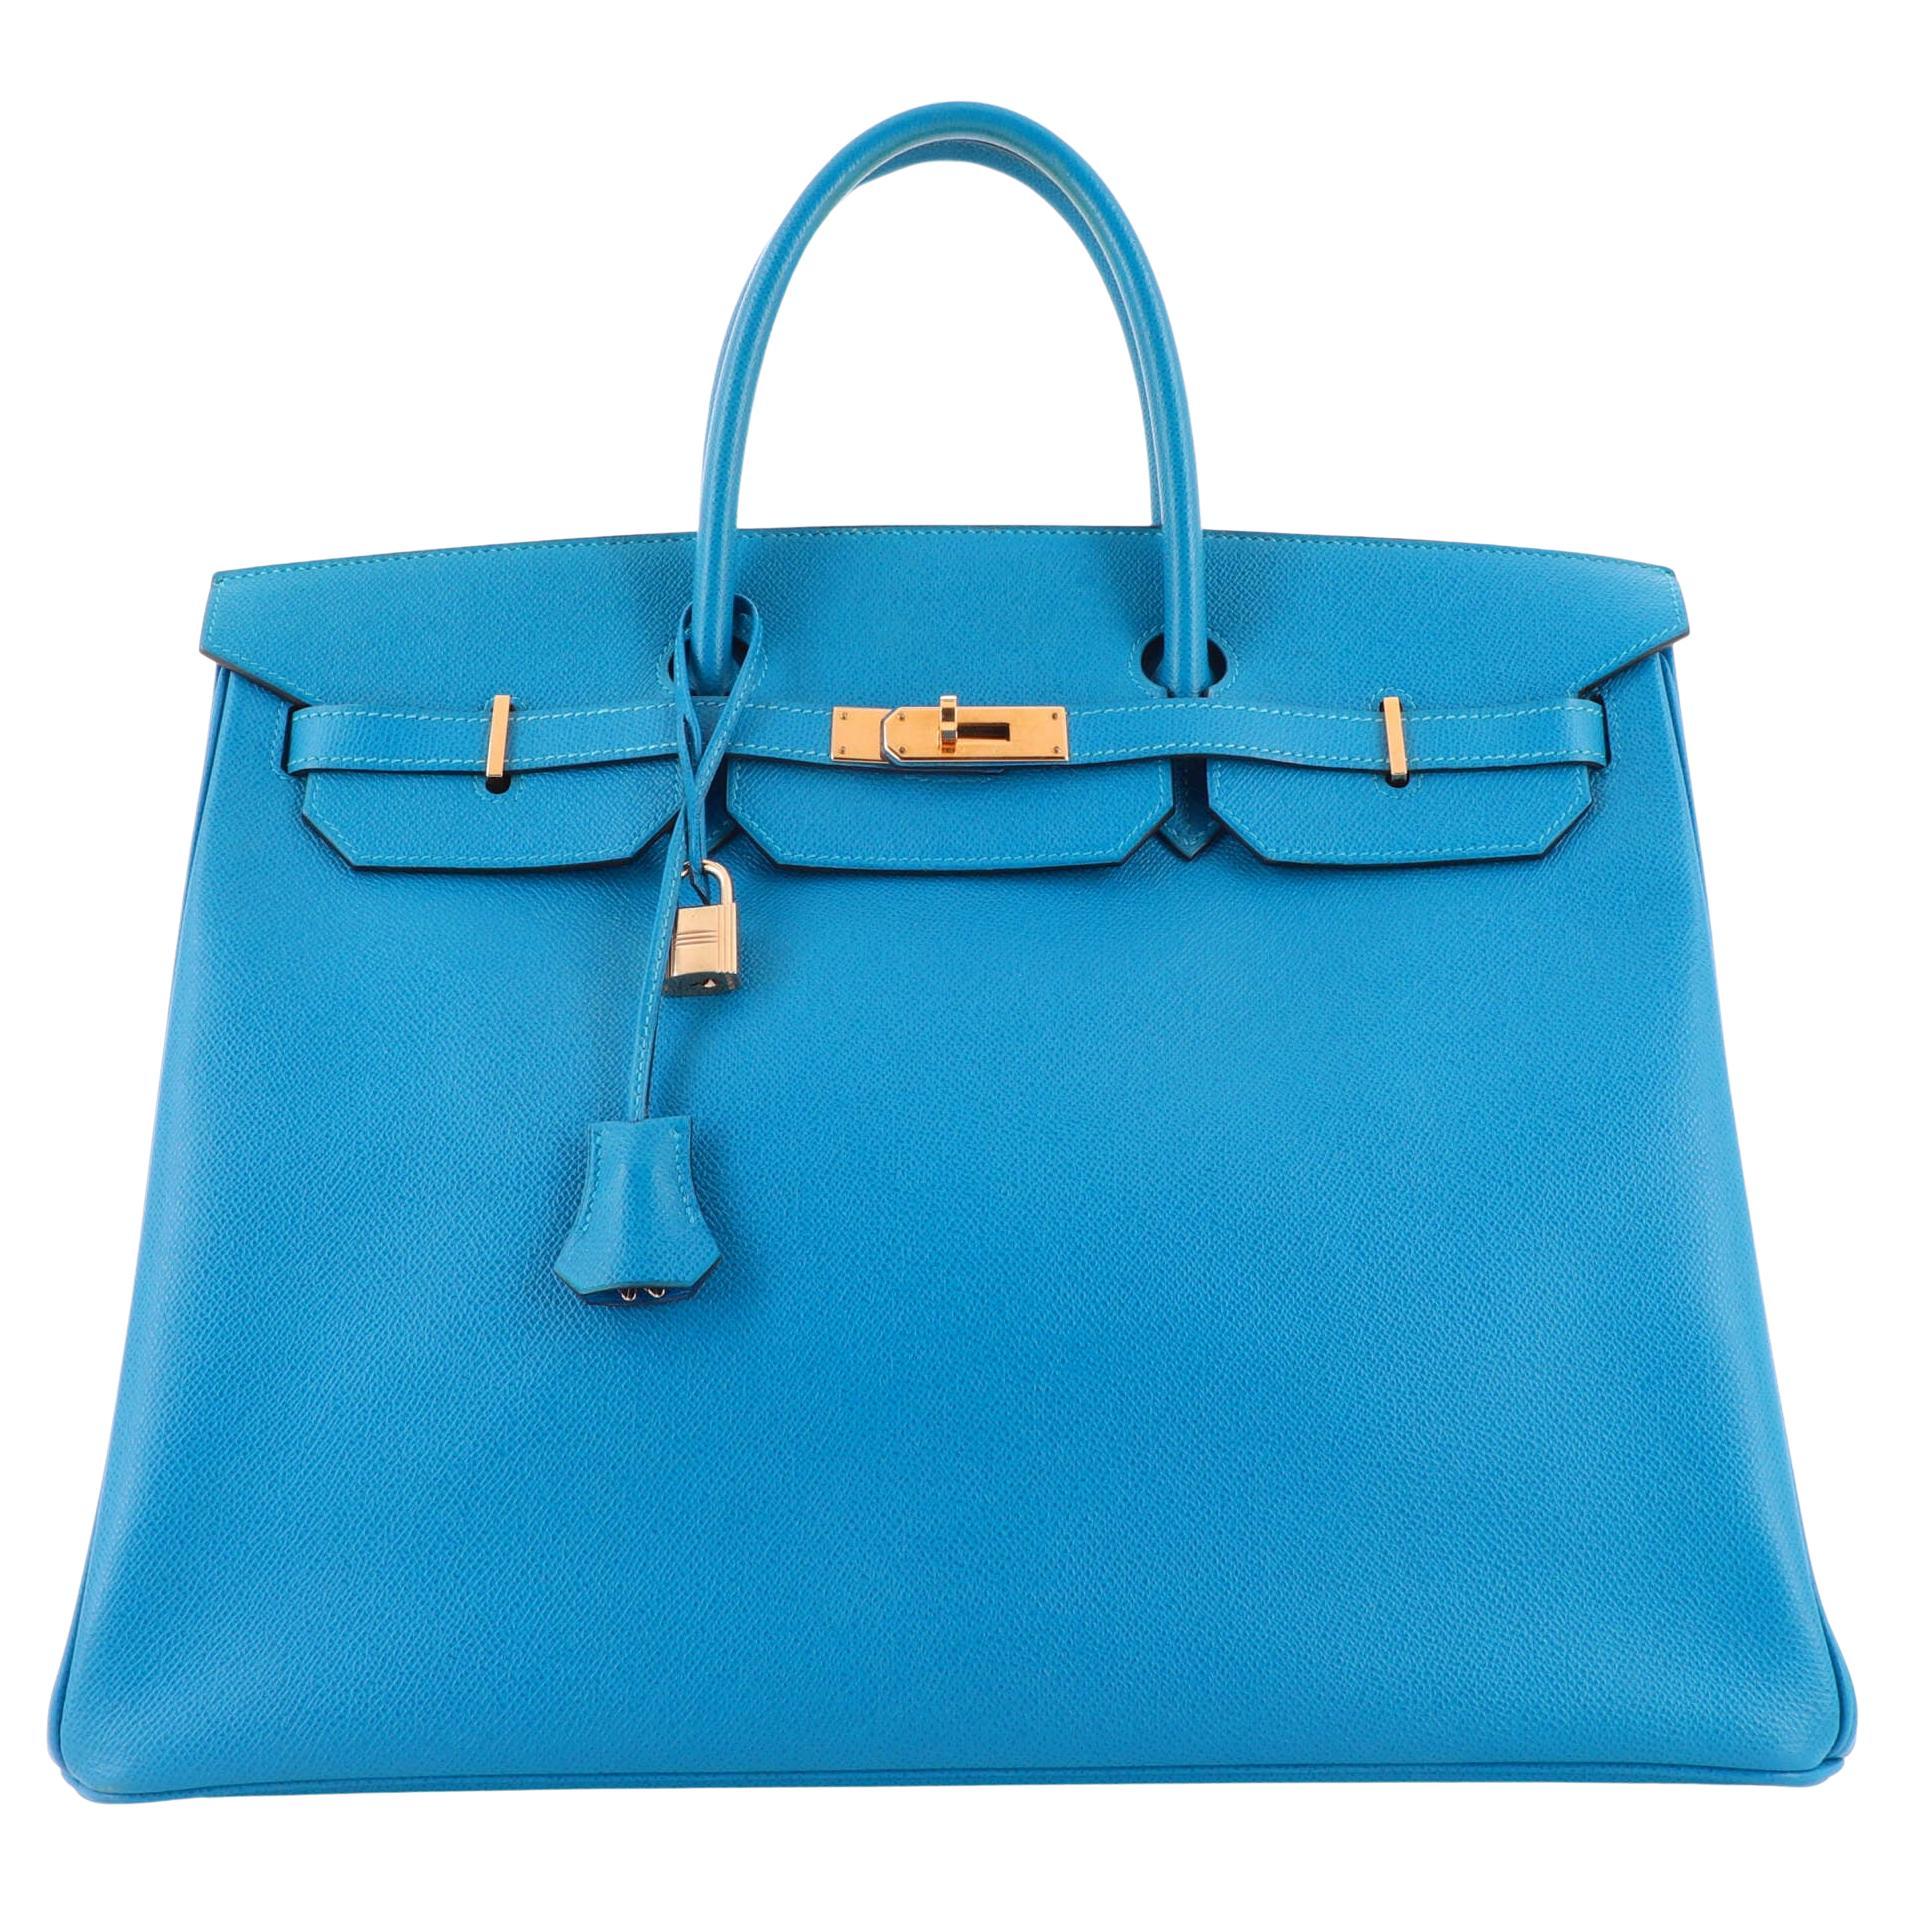 Hermes Birkin Handbag Bleu France Epsom with Gold Hardware 40